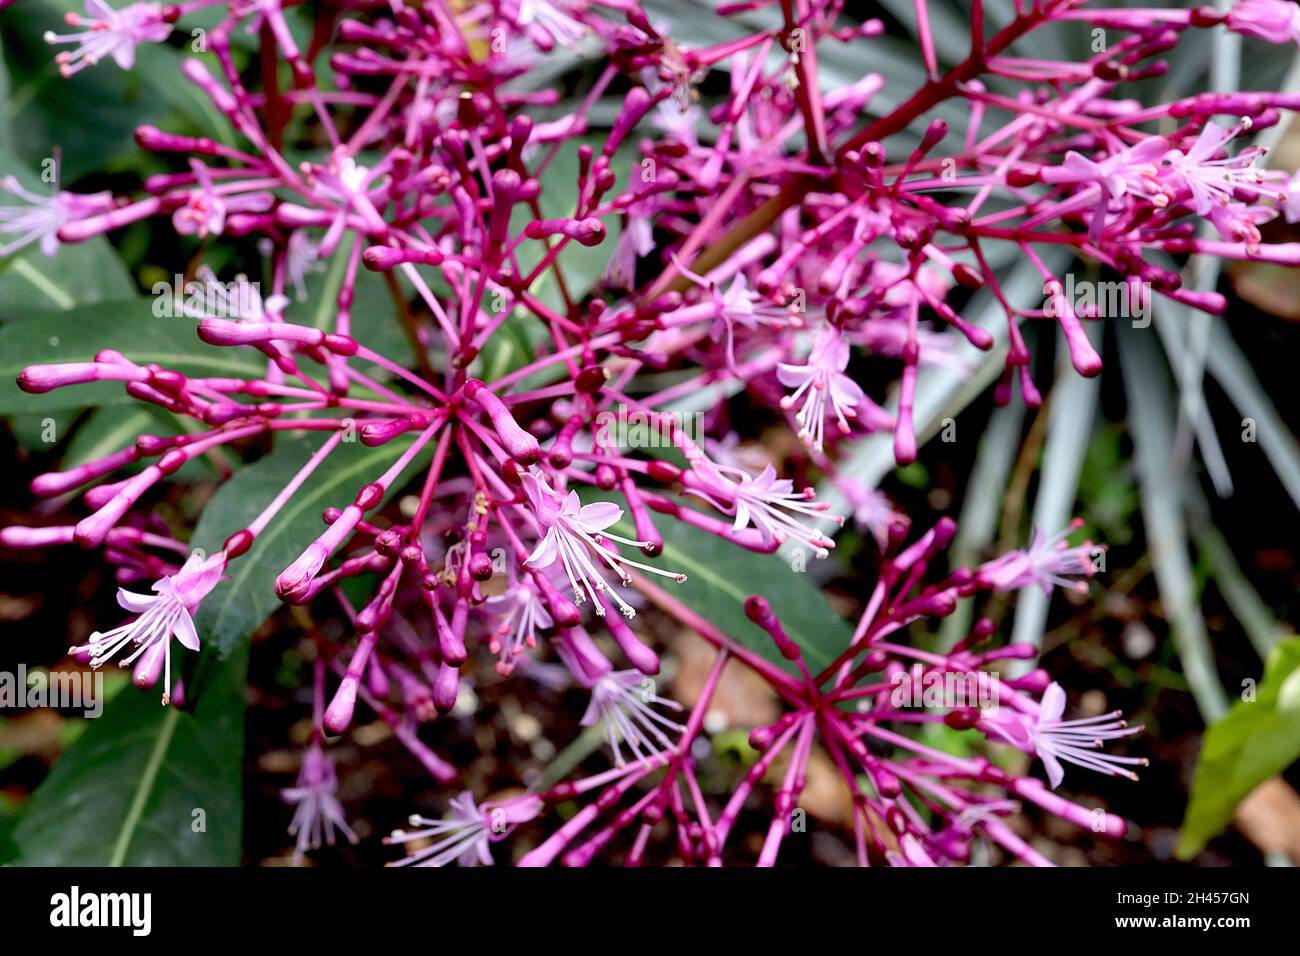 Fuchsia paniculata paniculate fuchsia – luftige Rispen aus kleinen blassrosa Blüten mit reflexartigen Blütenblättern und purpurroten Eierstöcken, Oktober, England, Großbritannien Stockfoto